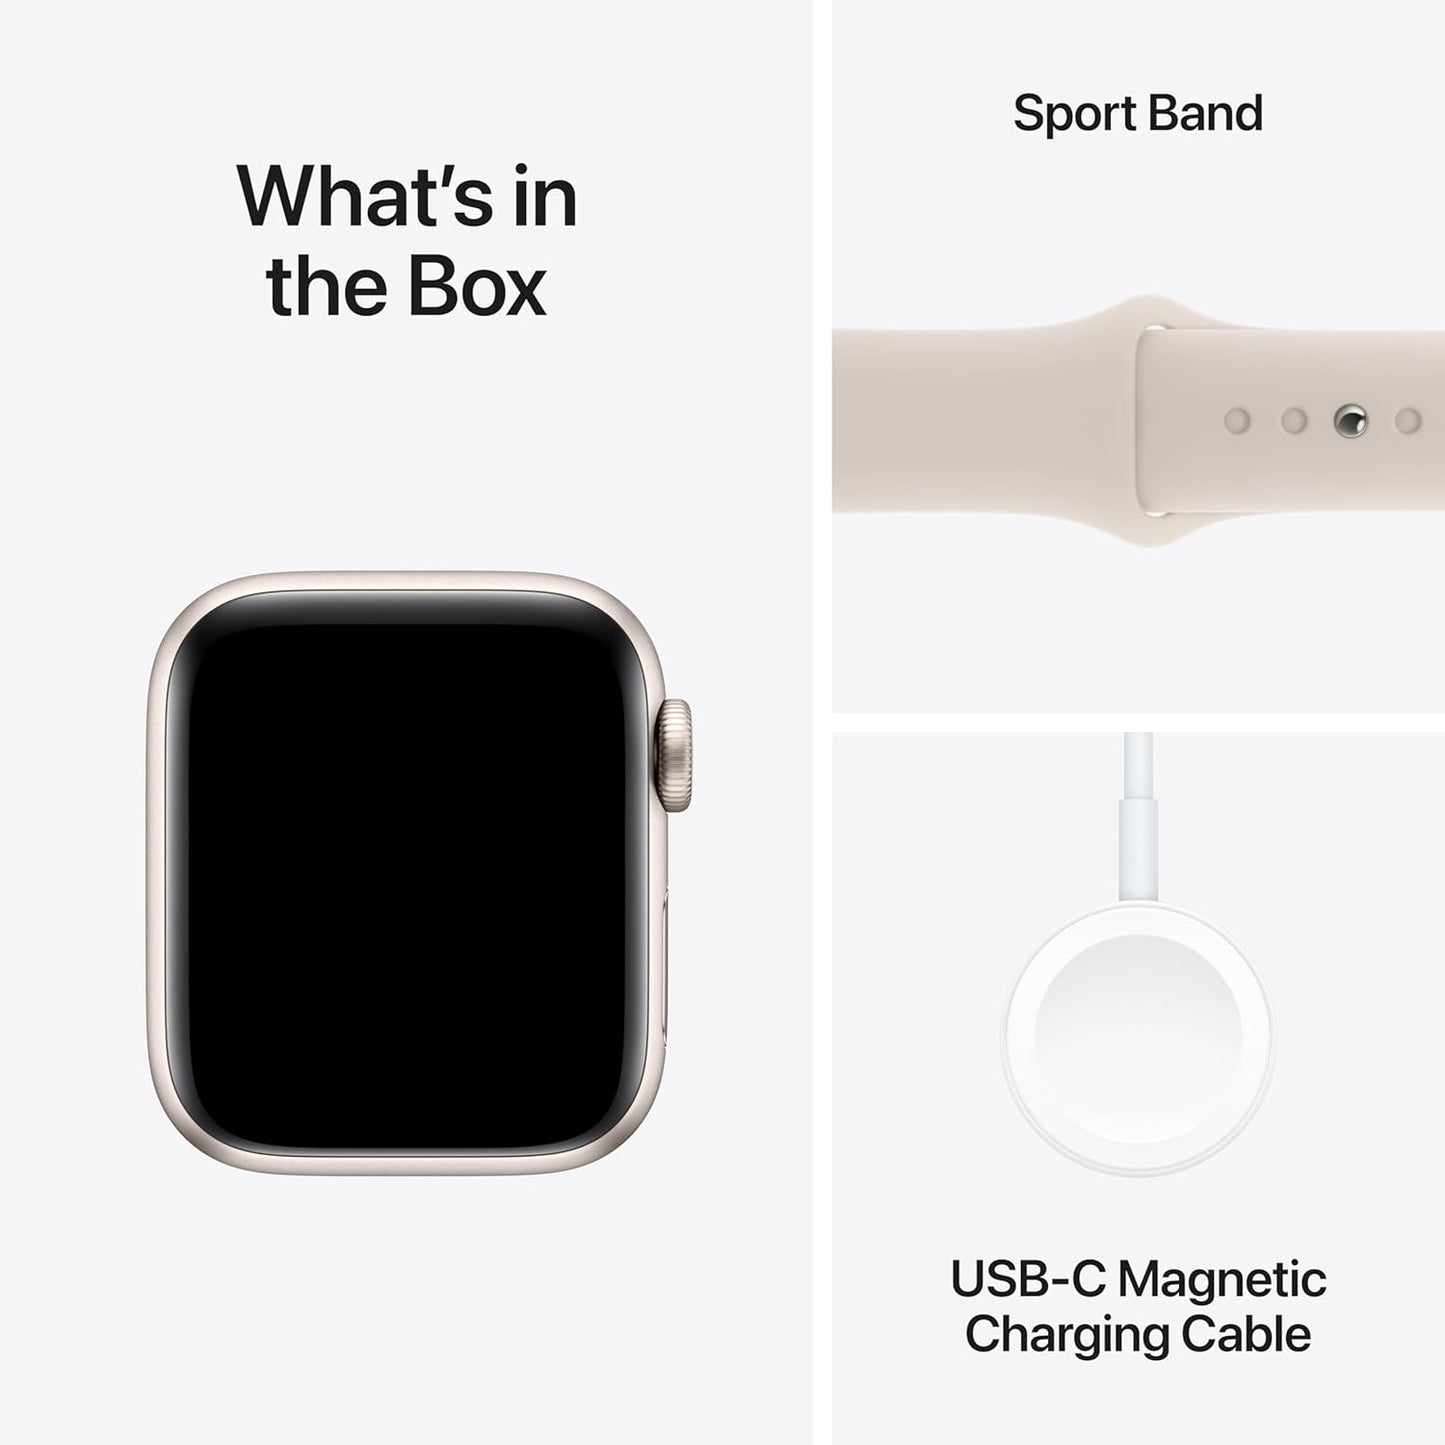 Apple Watch SE (الجيل الثاني) [GPS + Cellular 40mm] ساعة ذكية مع هيكل من الألومنيوم Starlight مع حزام Starlight الرياضي S/M. جهاز تتبع اللياقة البدنية والنوم، واكتشاف الأعطال، ومراقبة معدل ضربات القلب 